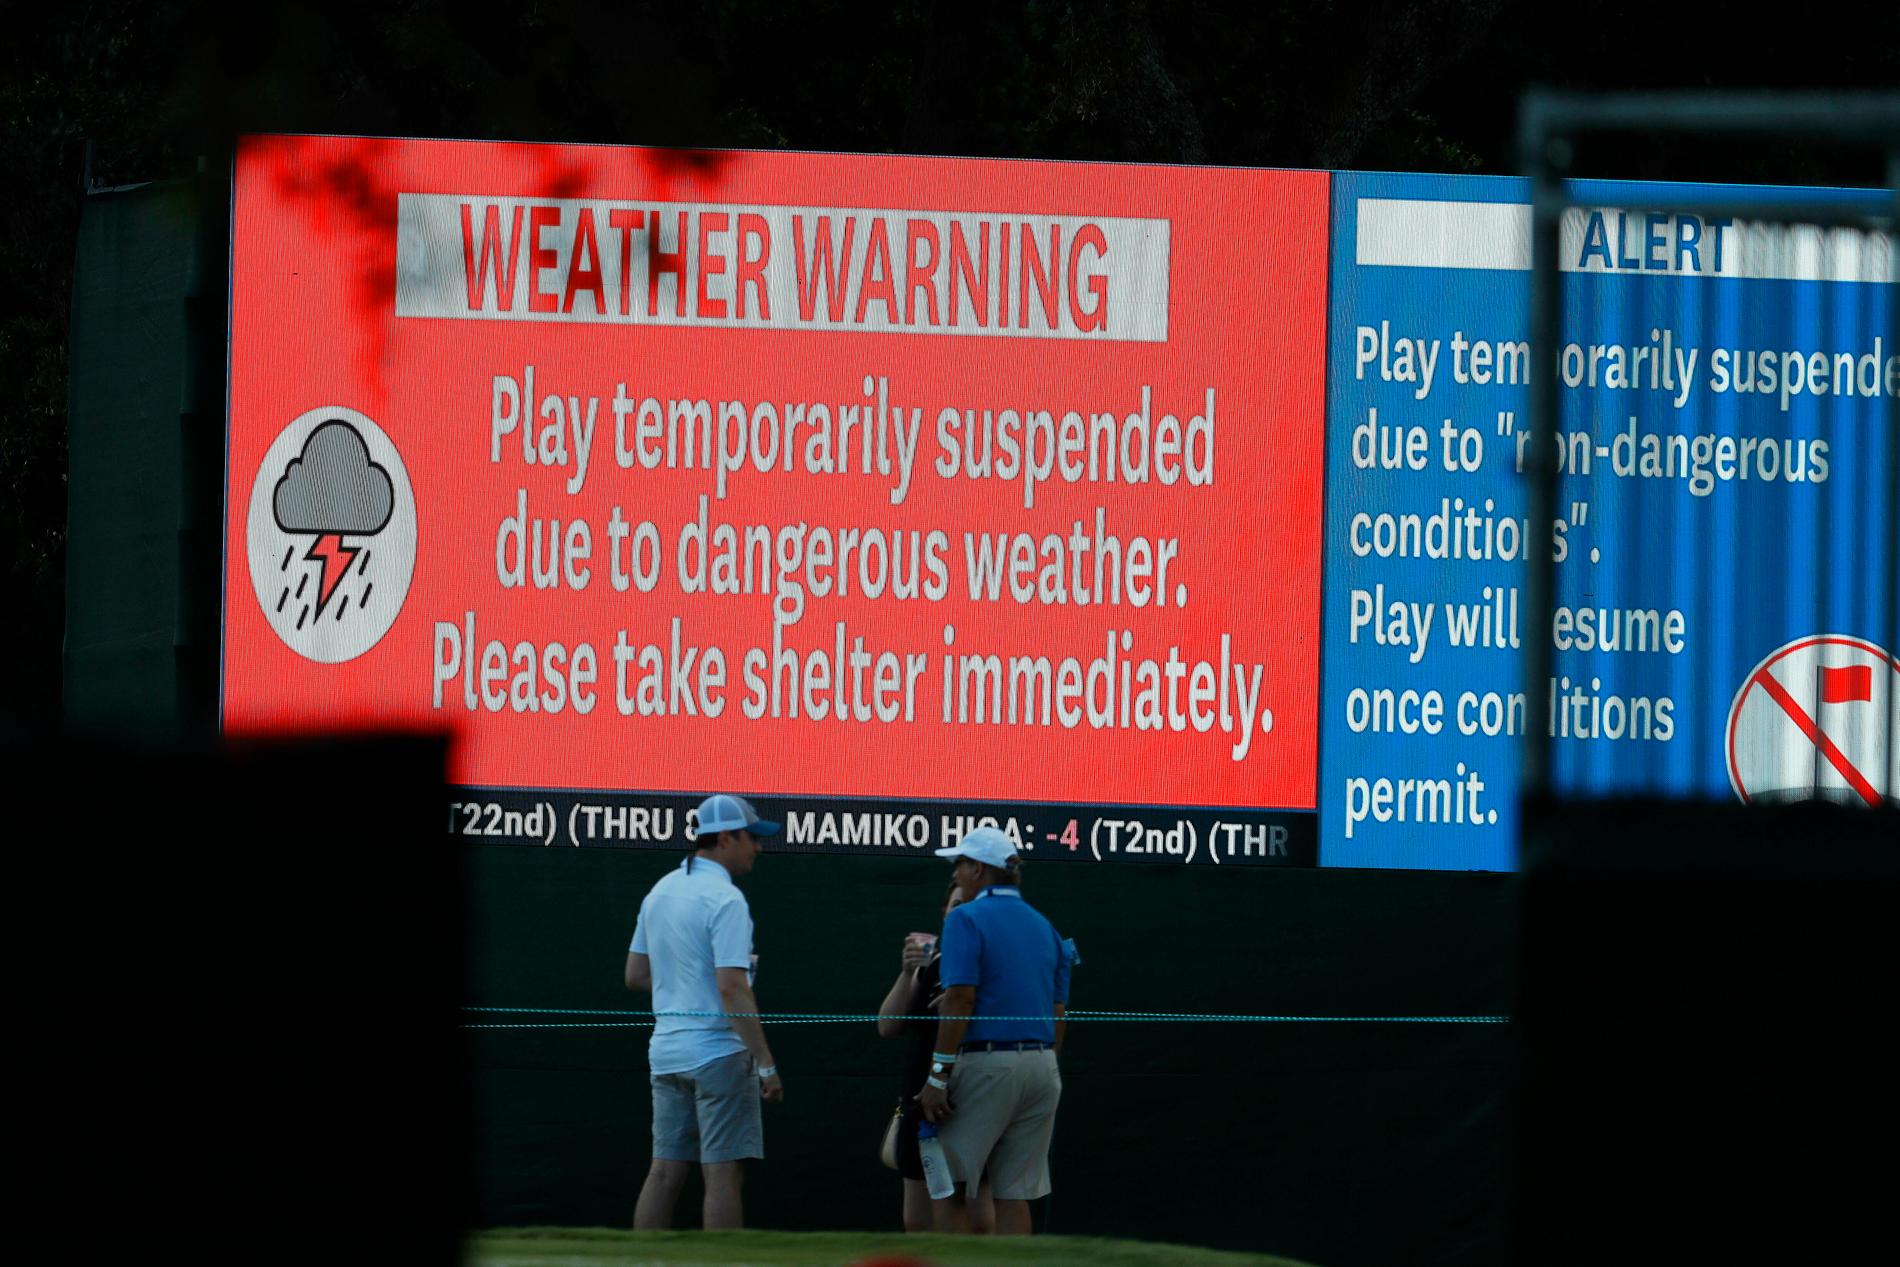 Varning för åska i Charleston. Ovädret tvingade arrangörerna att avbryta spelet i två timmar.